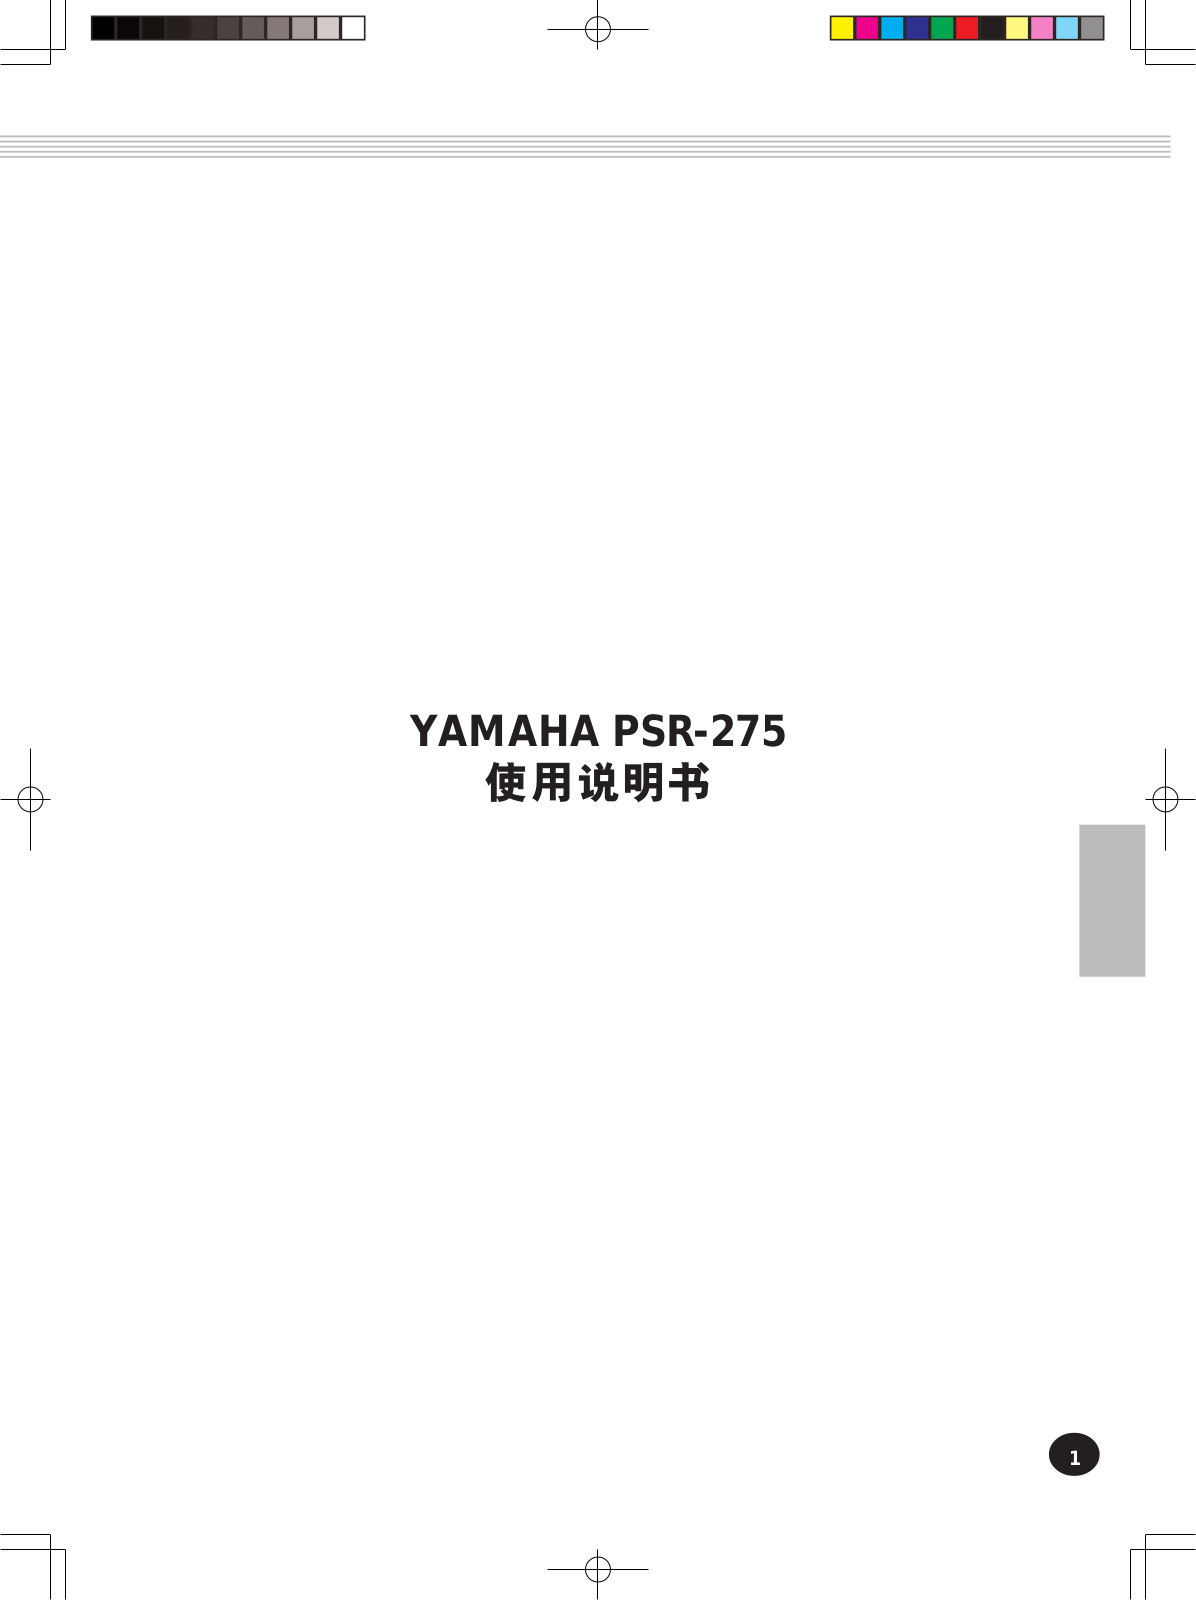 YAMAHA PSR-275 User Manual